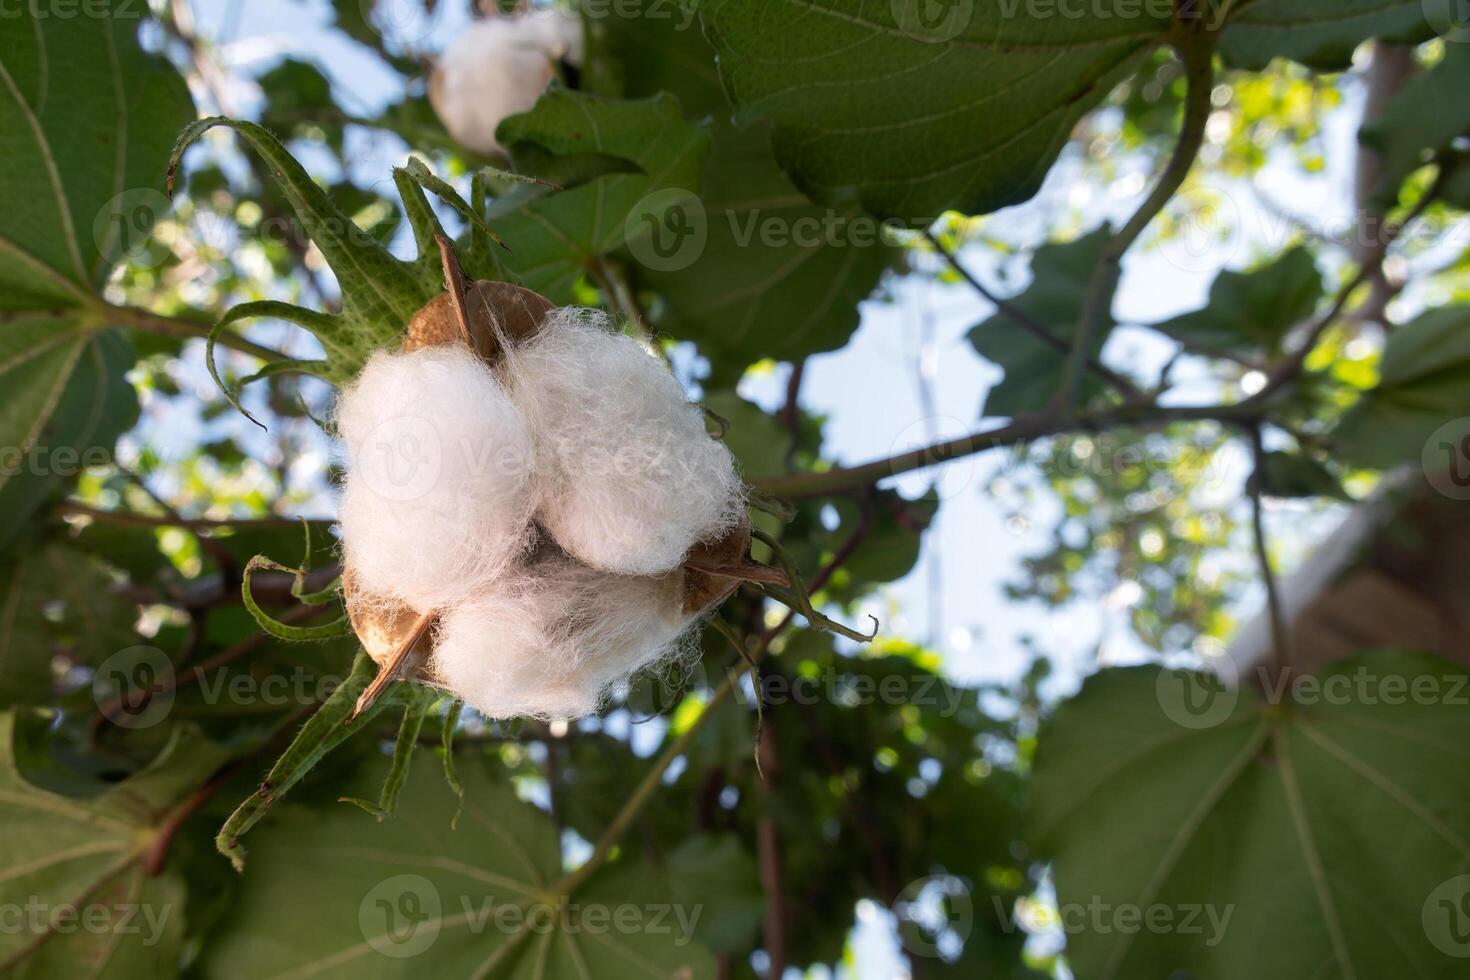 fofoca arbóreo, algodão plantar, com espaço para texto foto